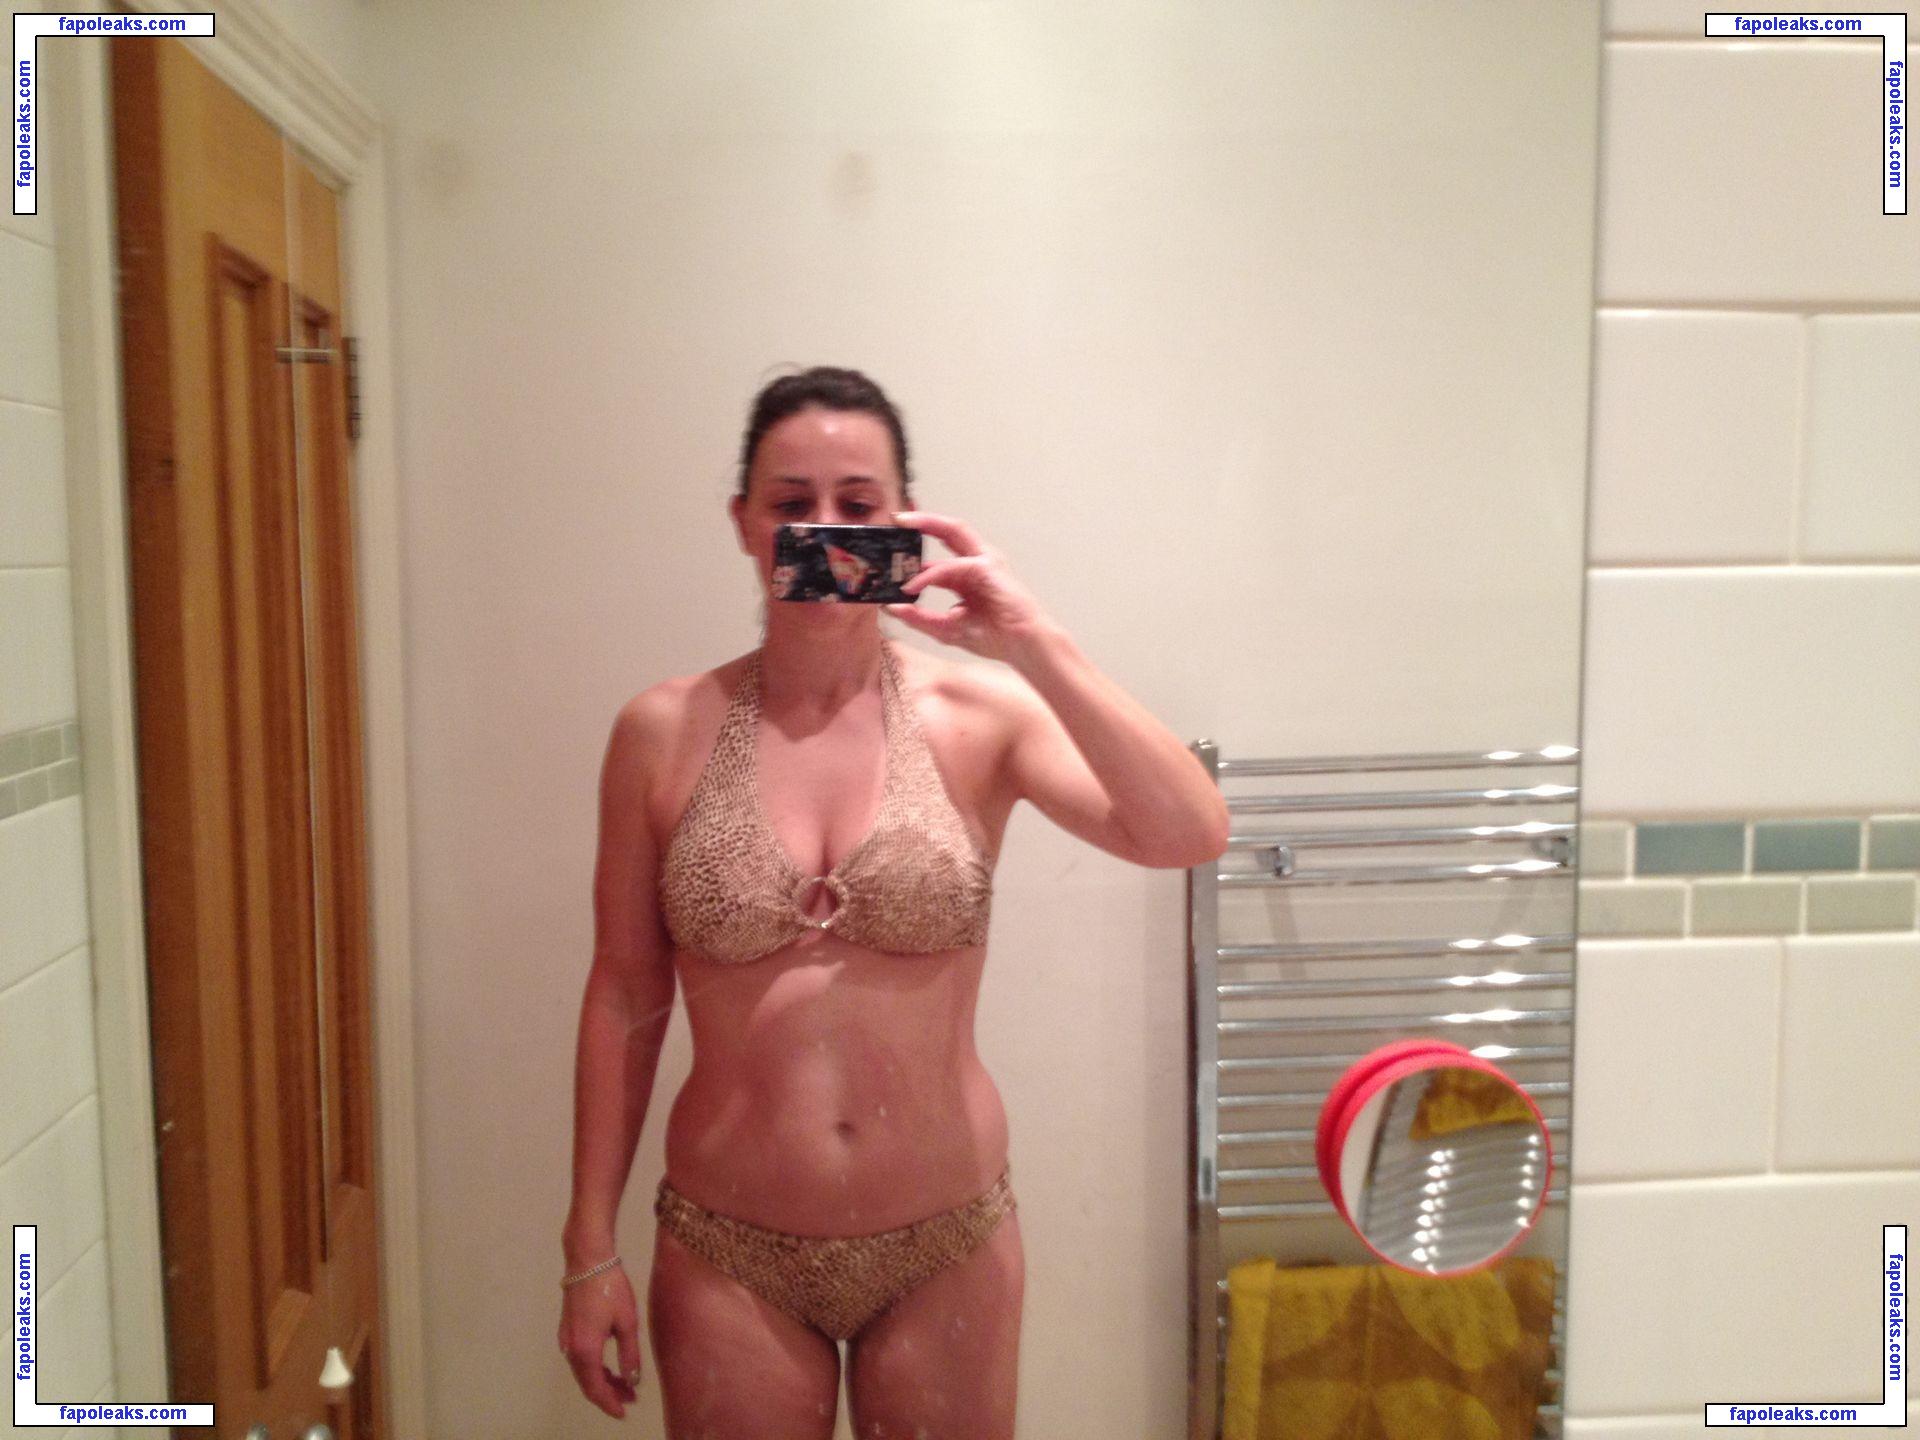 Jill Halfpenny / jillhalfpennyfans nude photo #0003 from OnlyFans